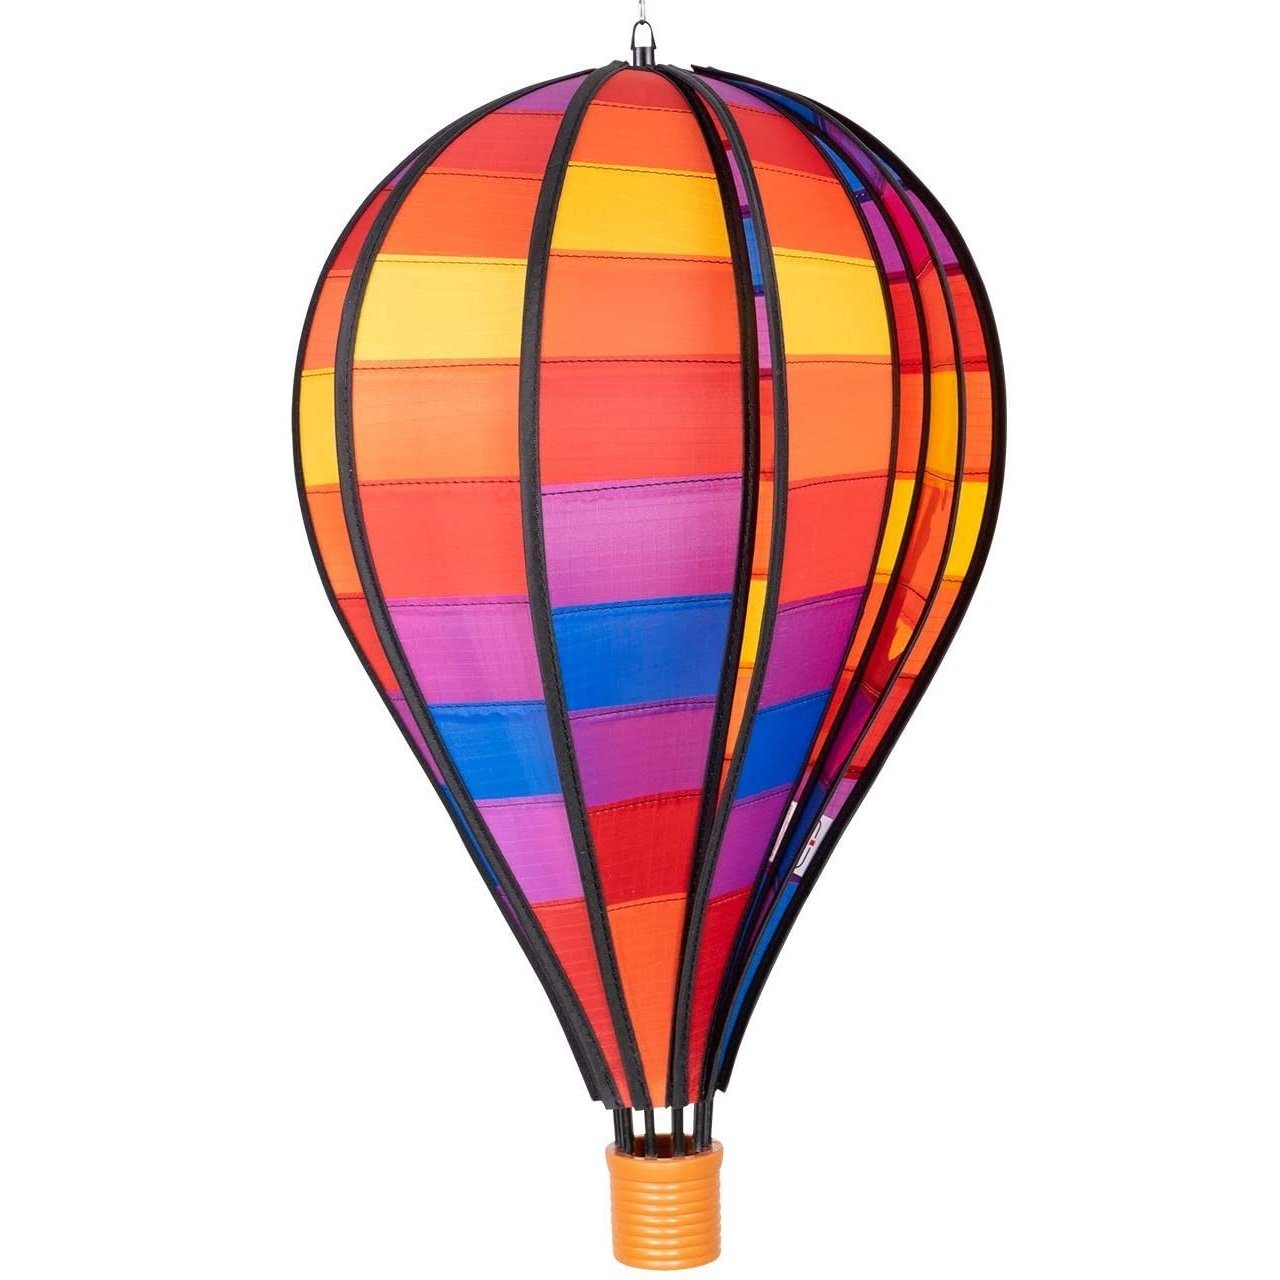 Satorn Windspiel Patchwork CiM Windspiel - Balloon